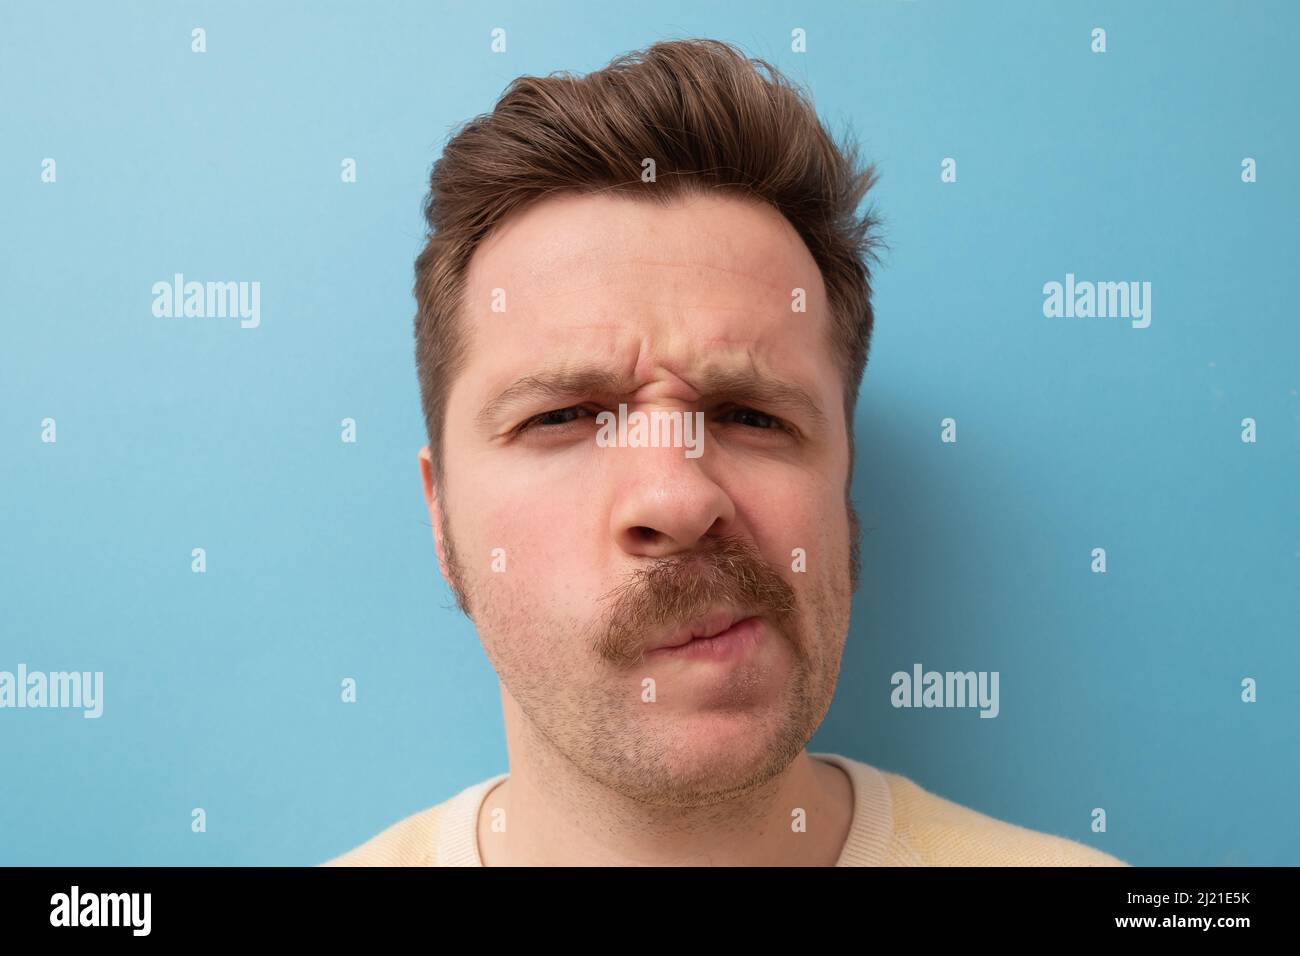 Mann mit lustigen Schnurrbart, der Zweifel hat und mit verwirrem Gesichtsausdruck auf isoliertem blauem Hintergrund Stockfoto